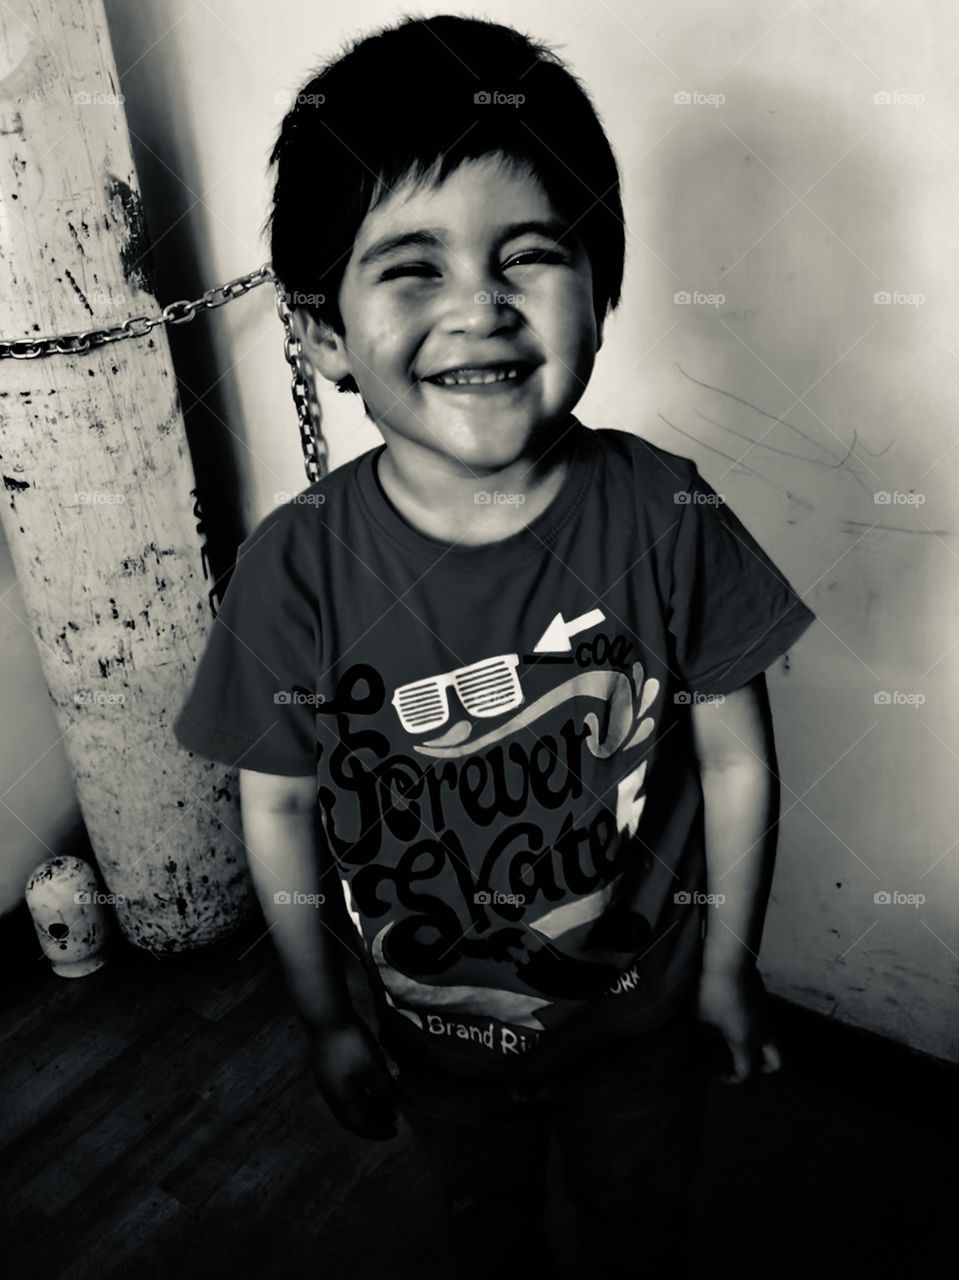 En algún lugar del mundo, existe un niño sonriente que está siendo aprisionado por la pobreza o el caos de una infancia traumática... 